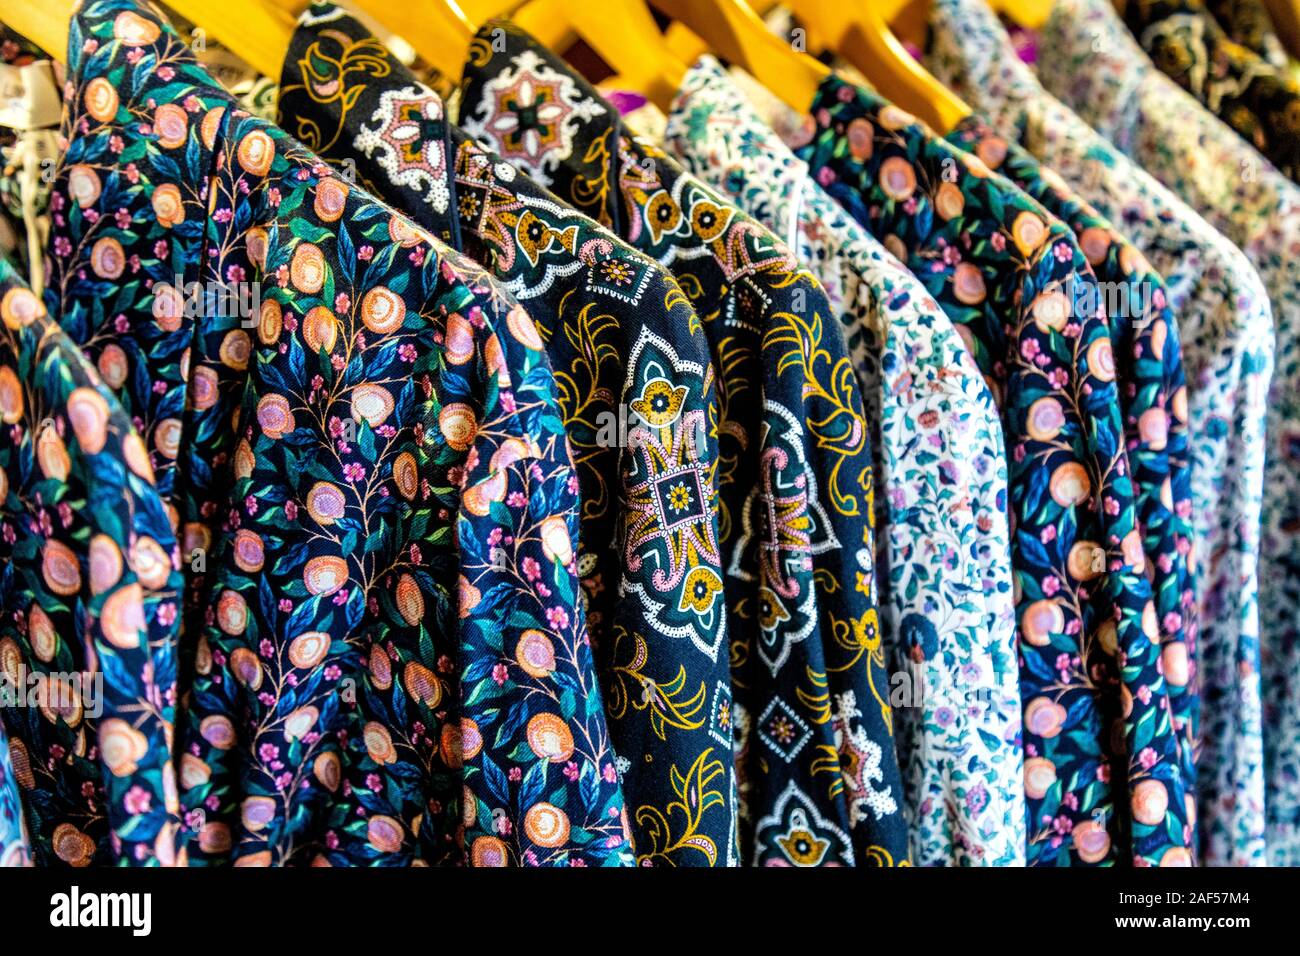 Pyjama shirts with Liberty's patterns hanging on a rail at Liberty London department store, London, UK Stock Photo